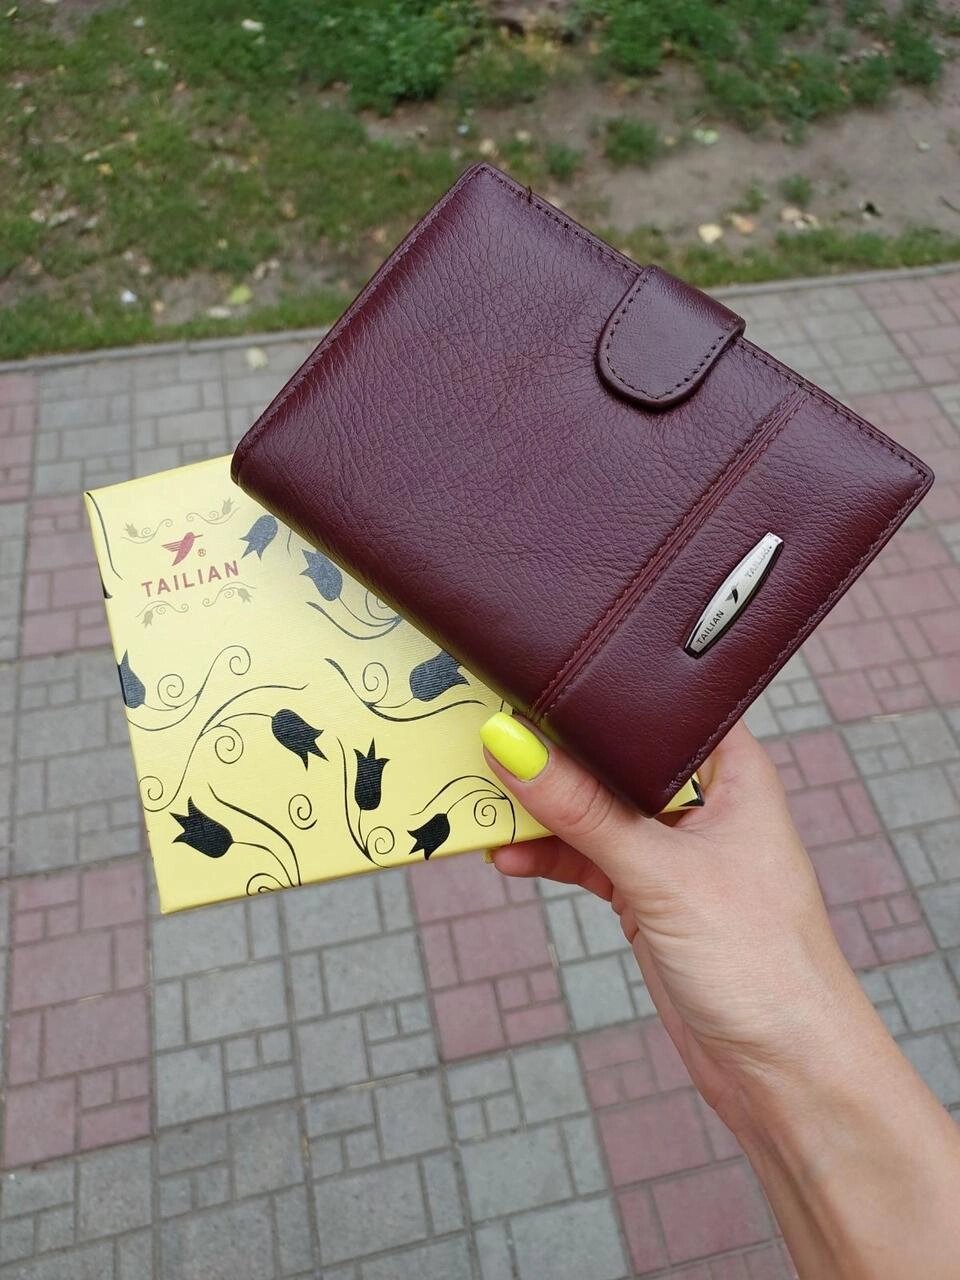 Гаманець чоловічий Tailian шкіряний гаманець чоловічий шкіряний портмоне від компанії Artiv - Інтернет-магазин - фото 1